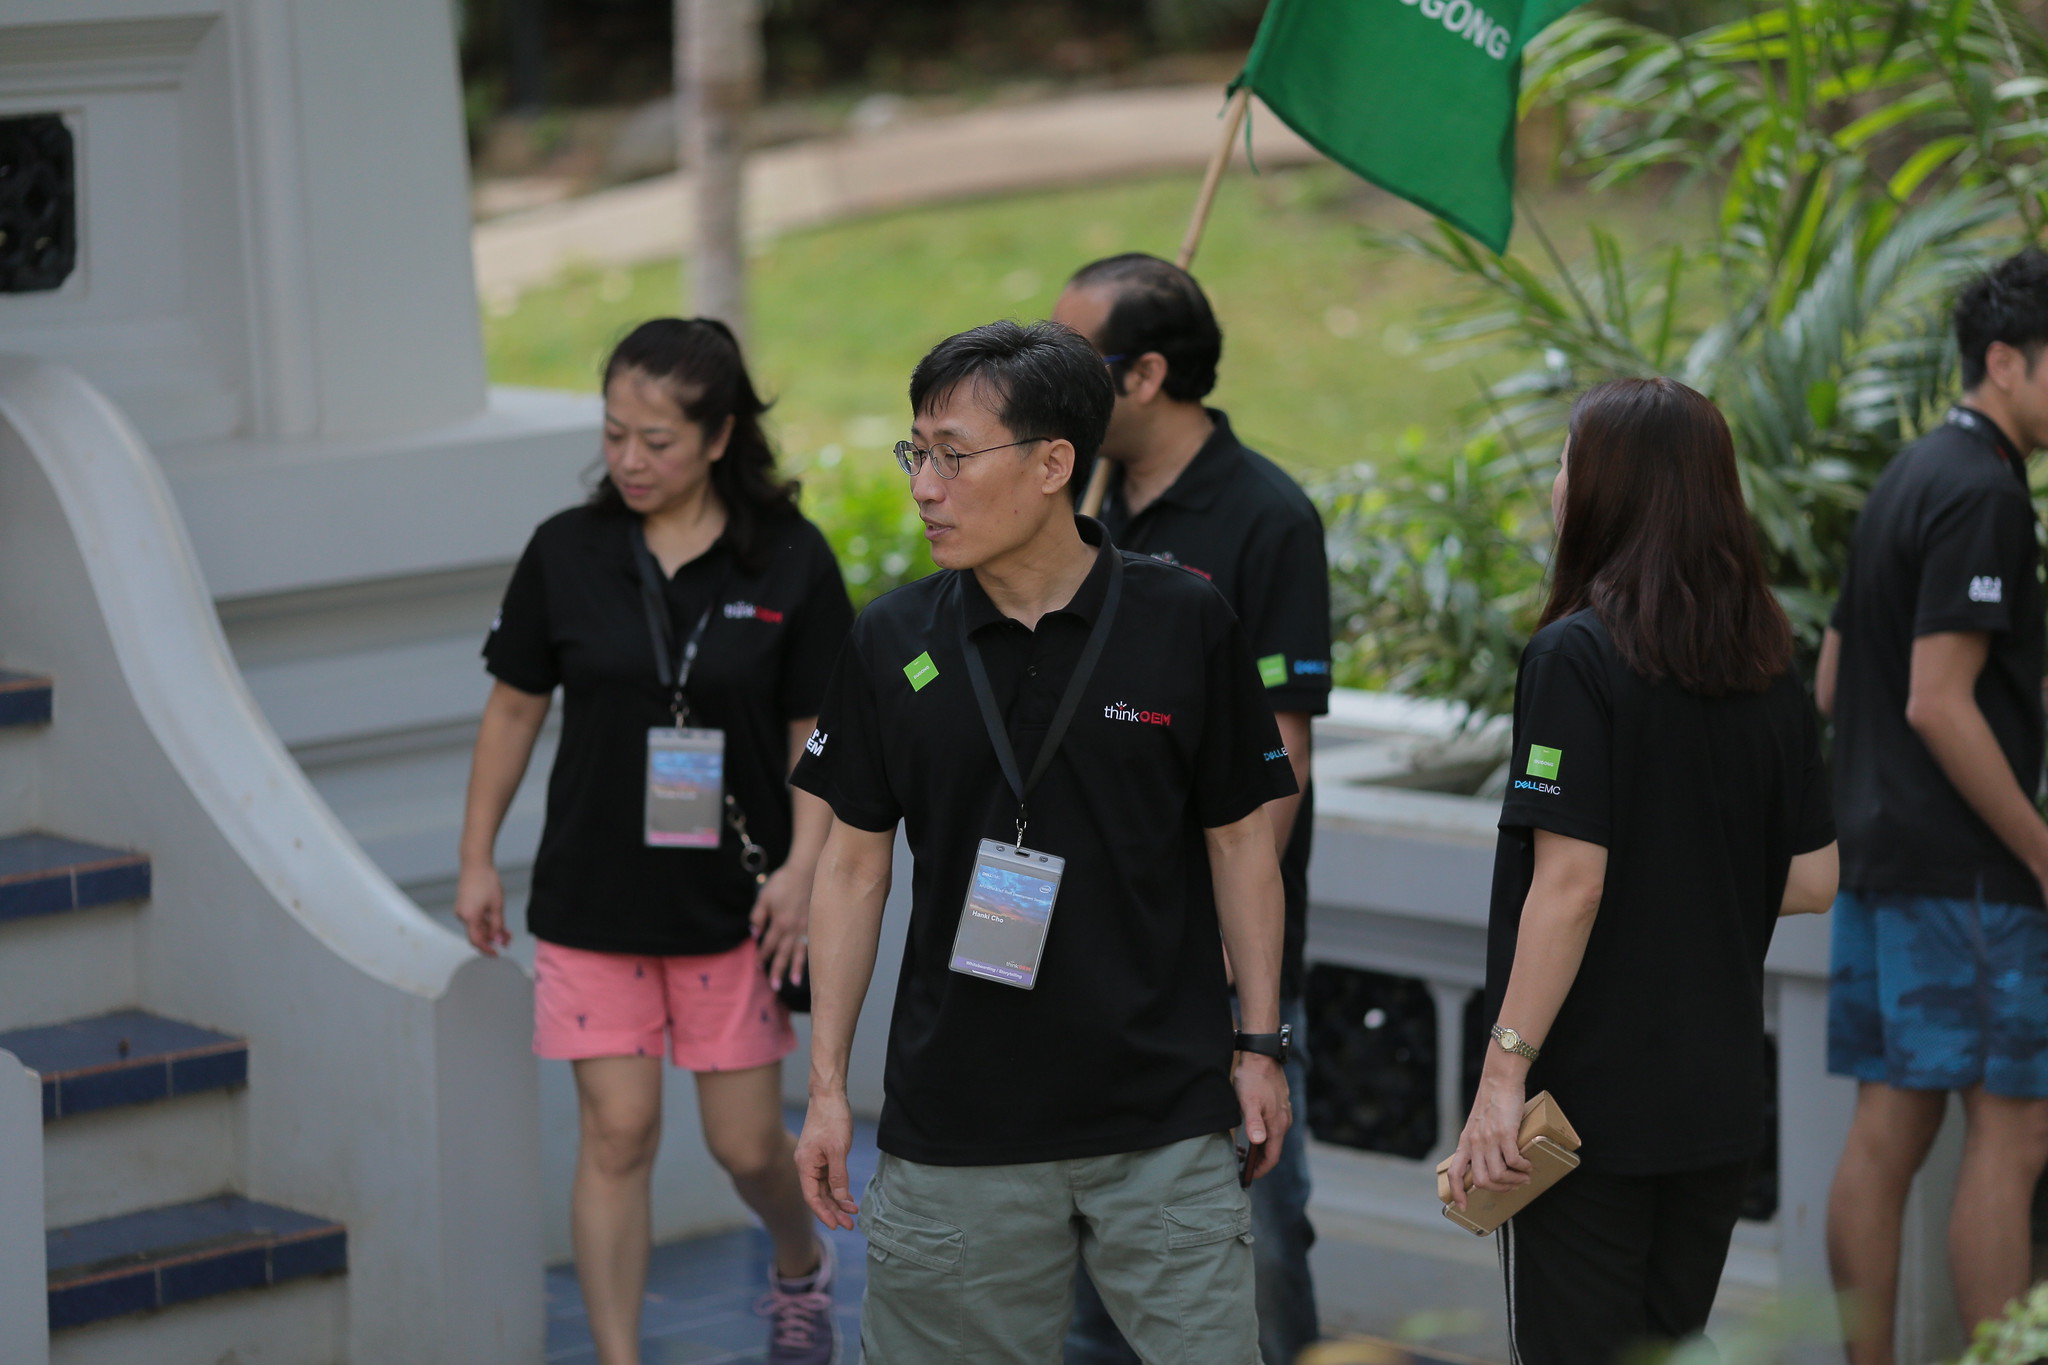 Soap Box & Solar Car Racing Team Building - Dell - December 2019 - Phuket